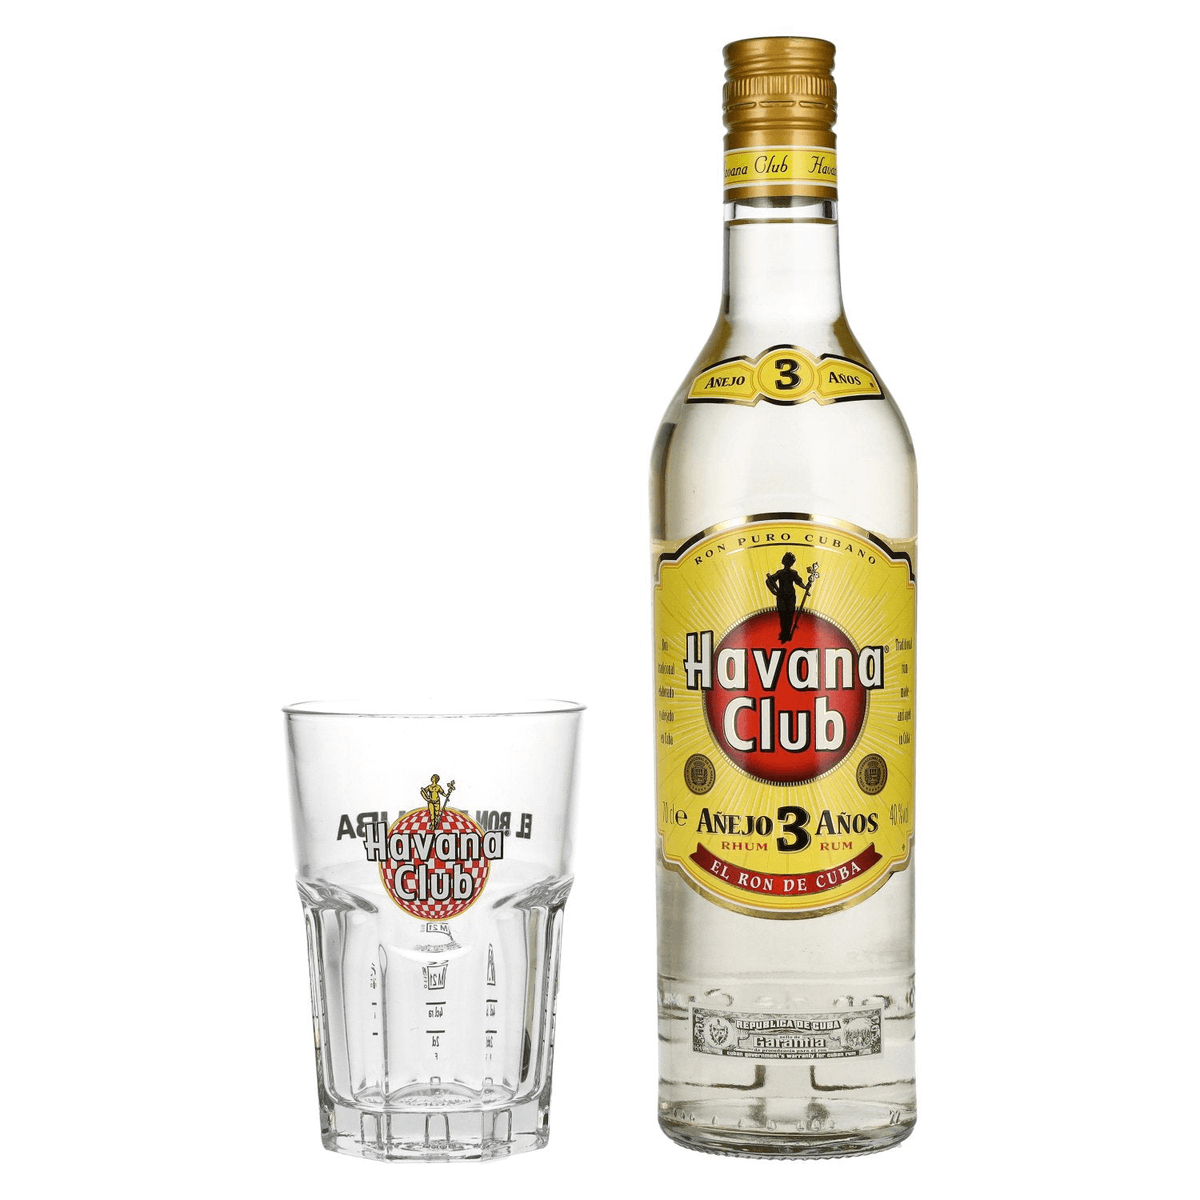 Havana Club Añejo Rum Winebuyers With Vol. | 0,7L 40% Glass 3 Años